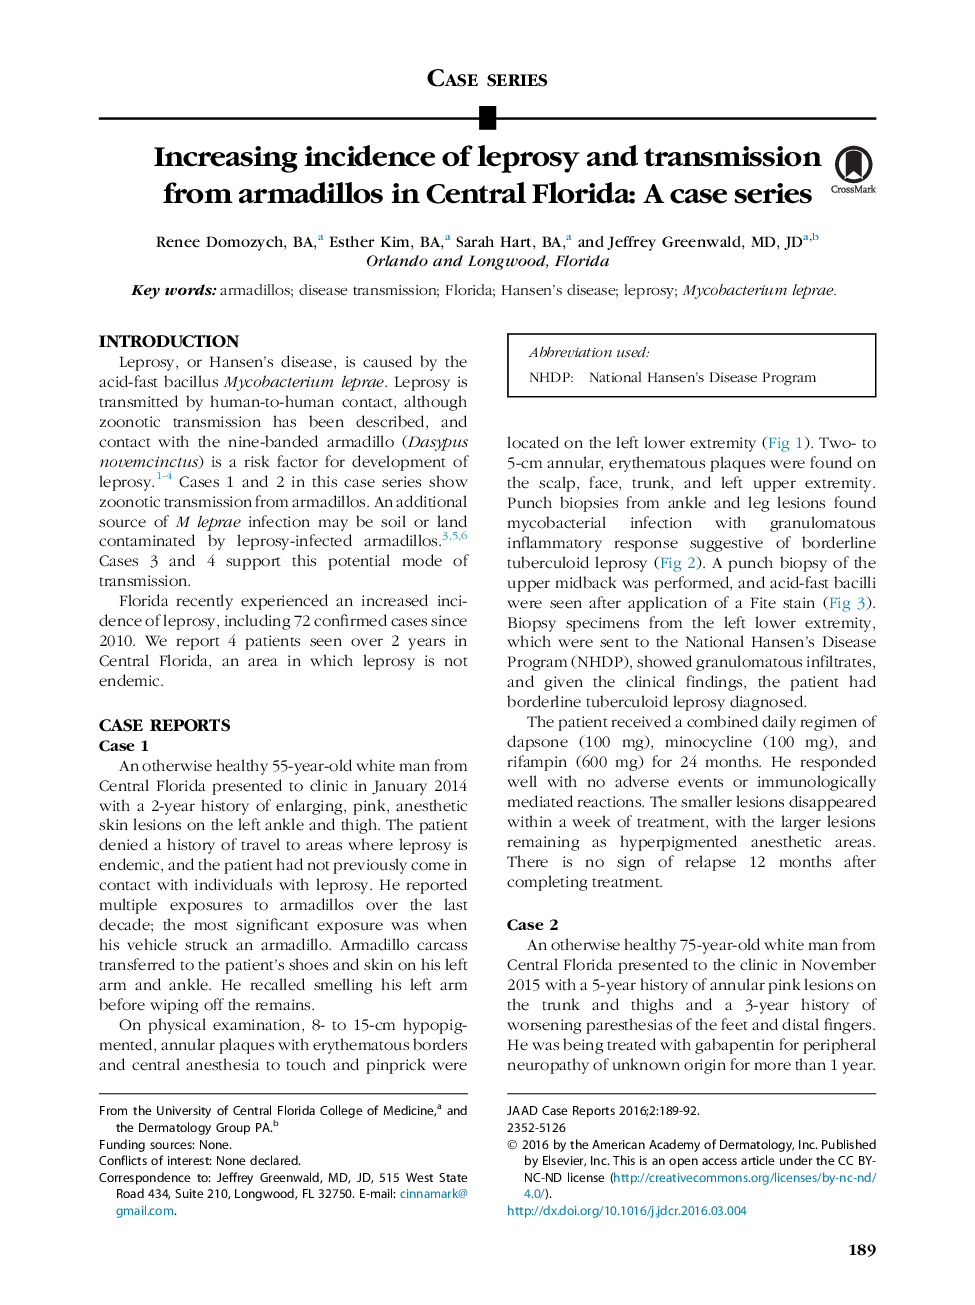 افزایش شیوع پرخاشگری و انتقال از آرامیدلوز در فلوریدای مرکزی: یک سری موارد 